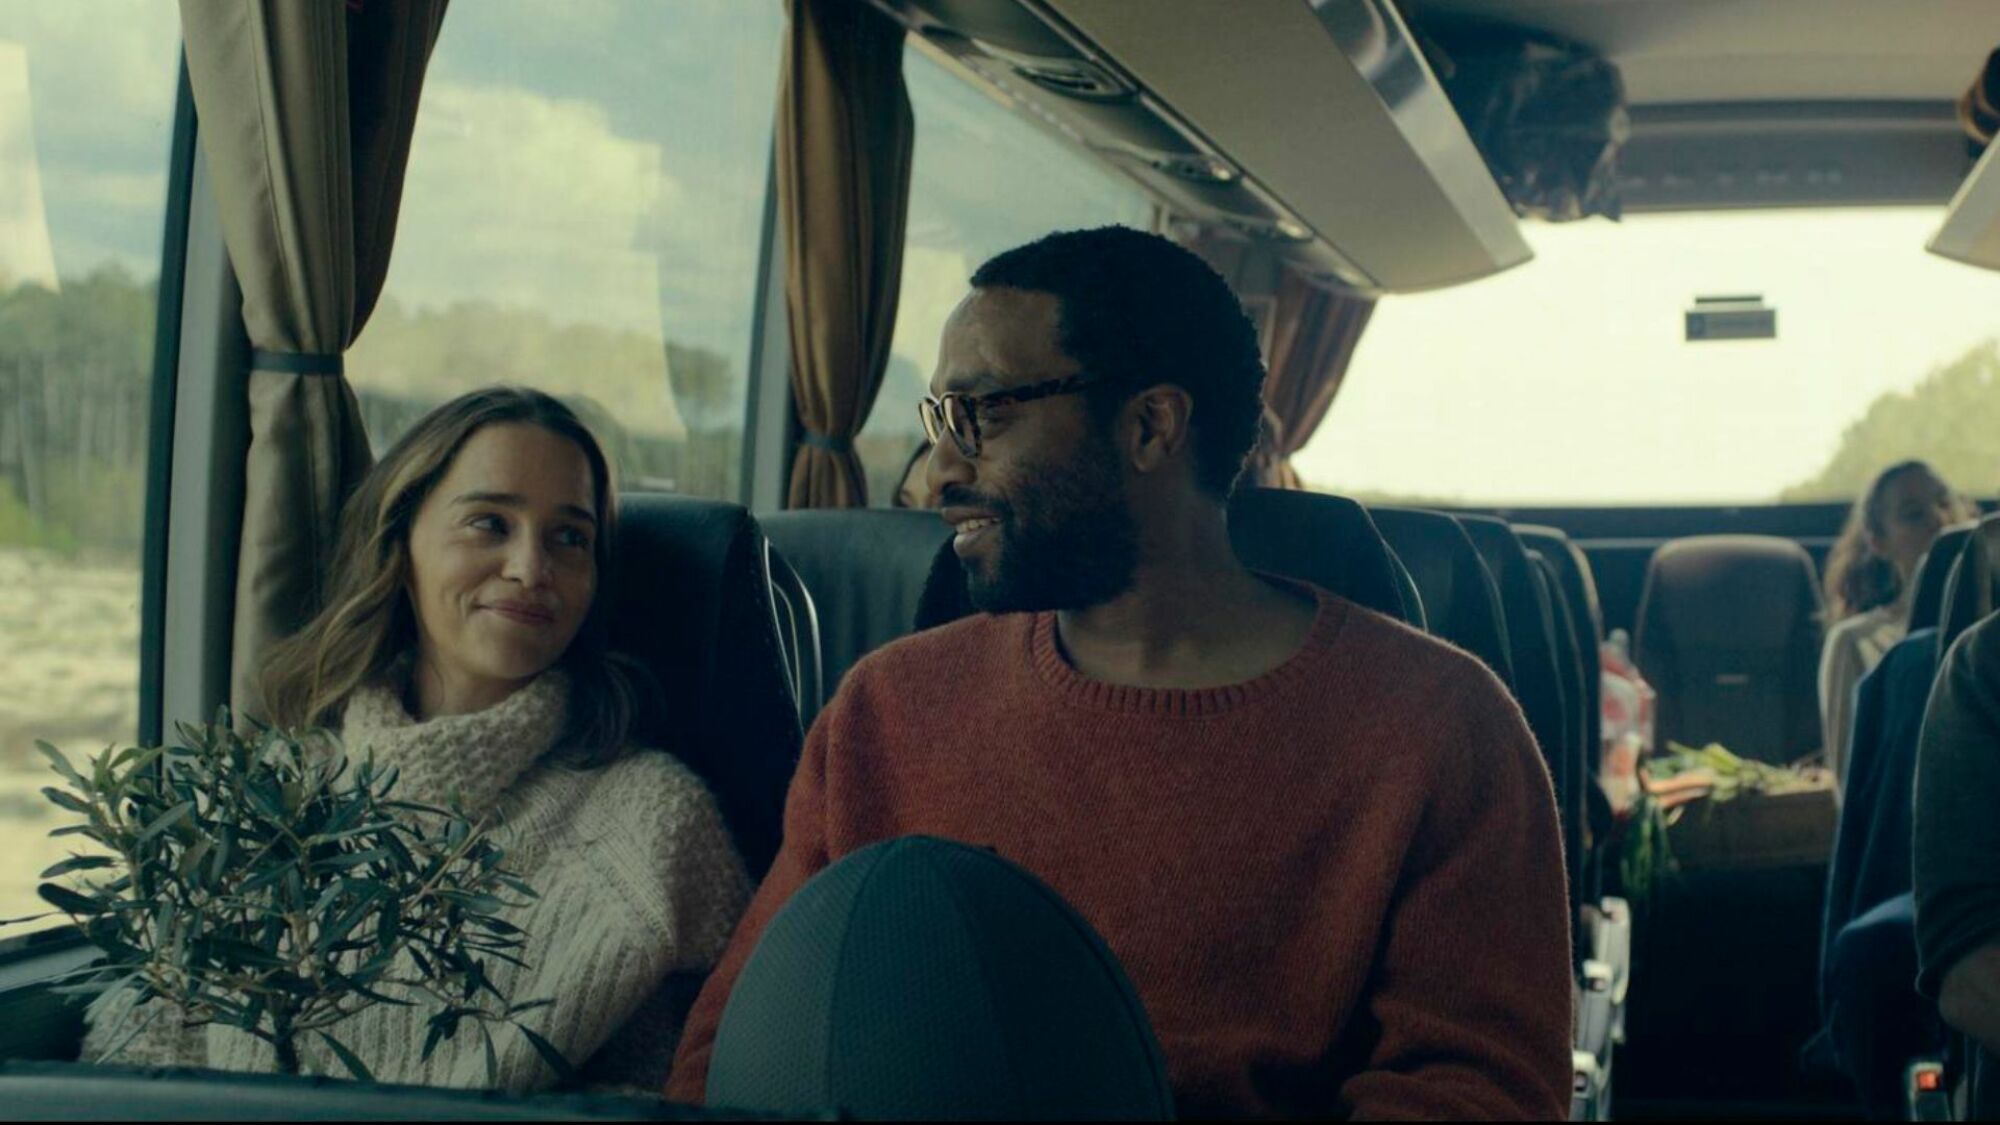 Emilia Clarke et Chiwetel Ejiofor prennent le bus dans "Pod Generation".